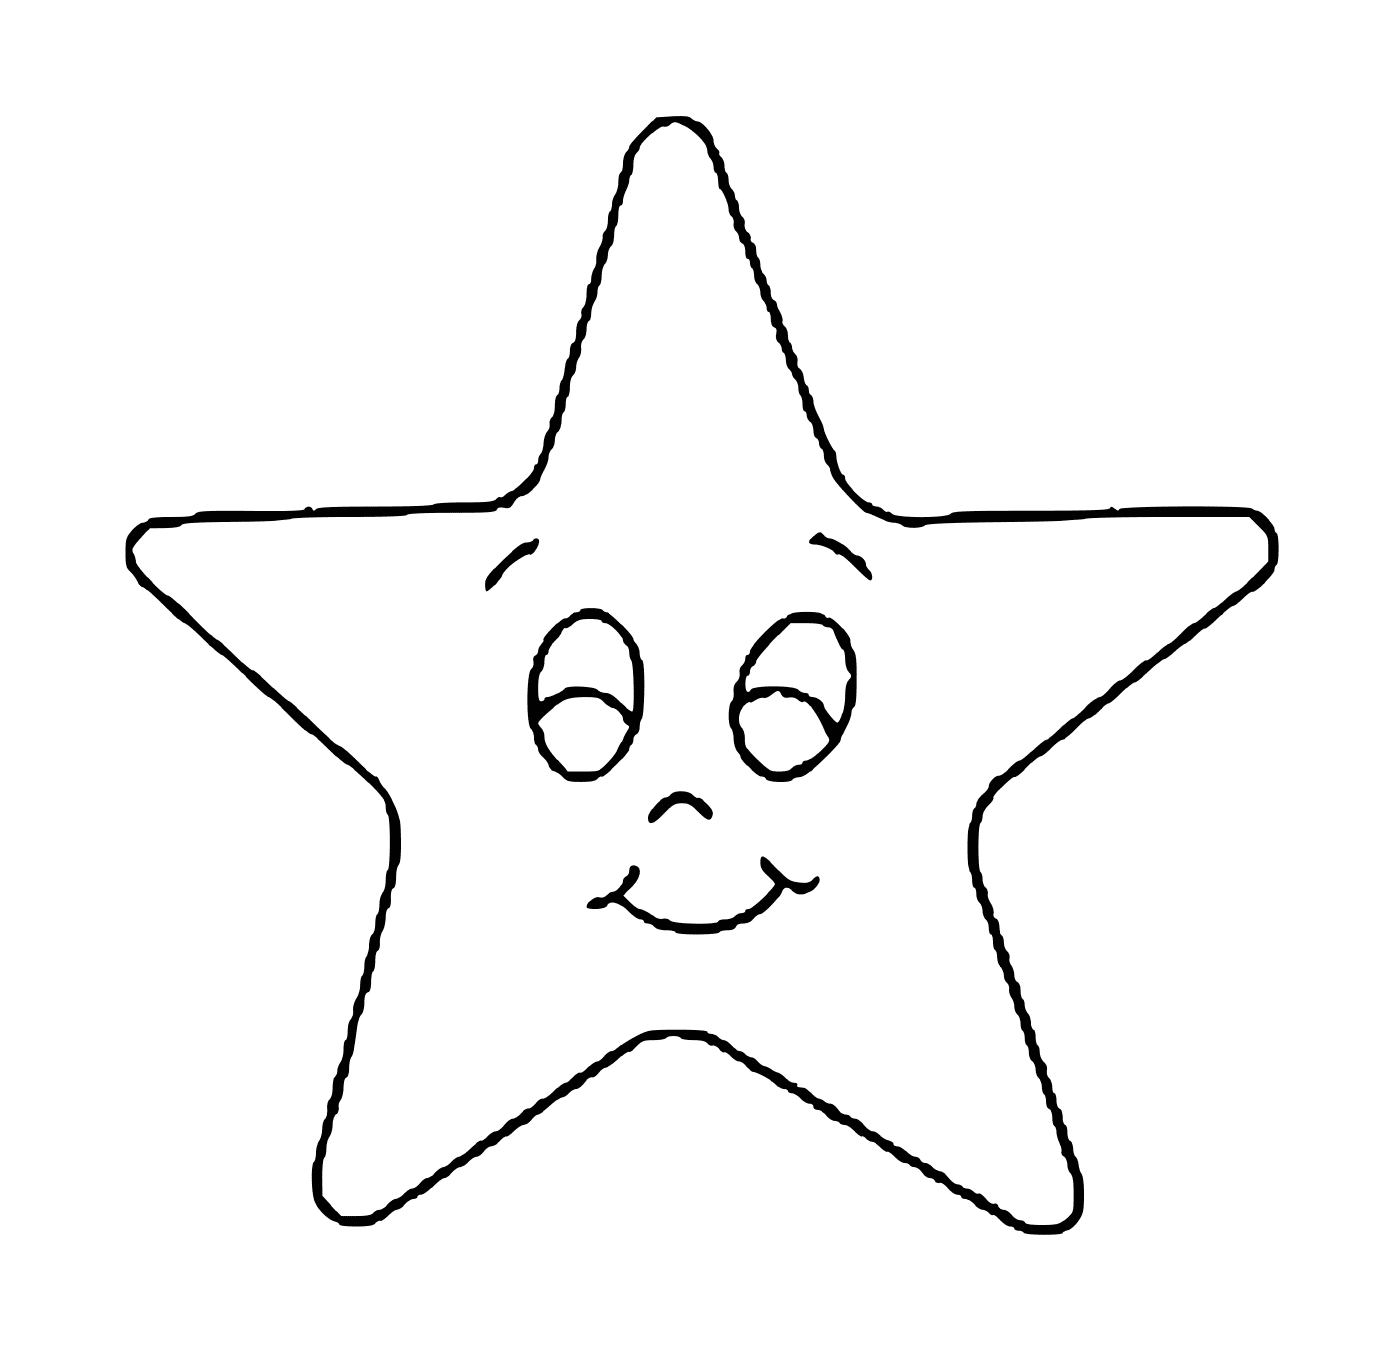   Une étoile avec un visage souriant 